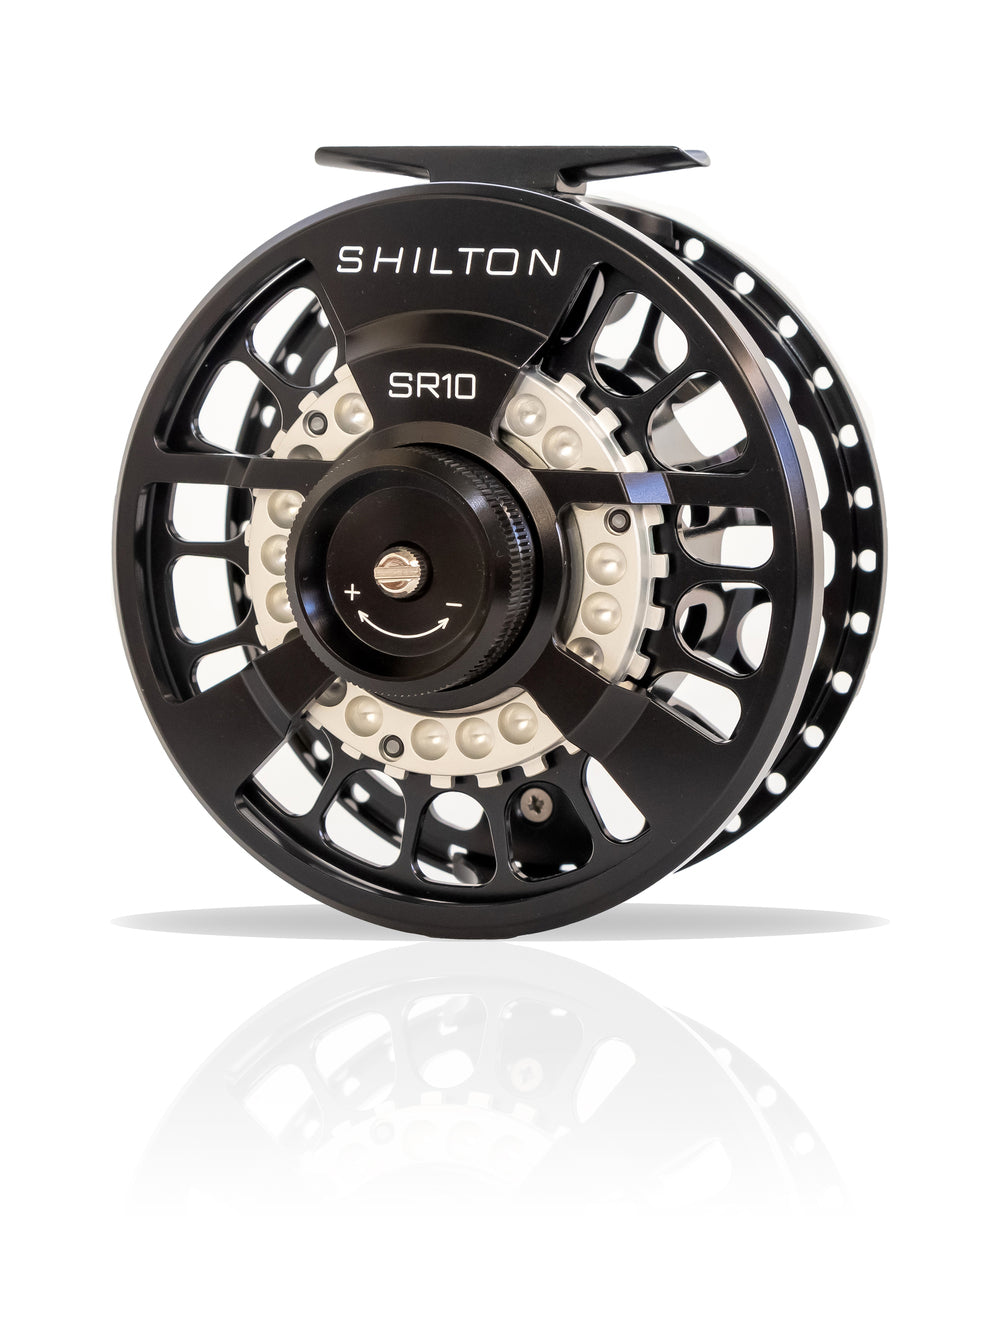 Shilton SR10 Black Reel (10-11wt)